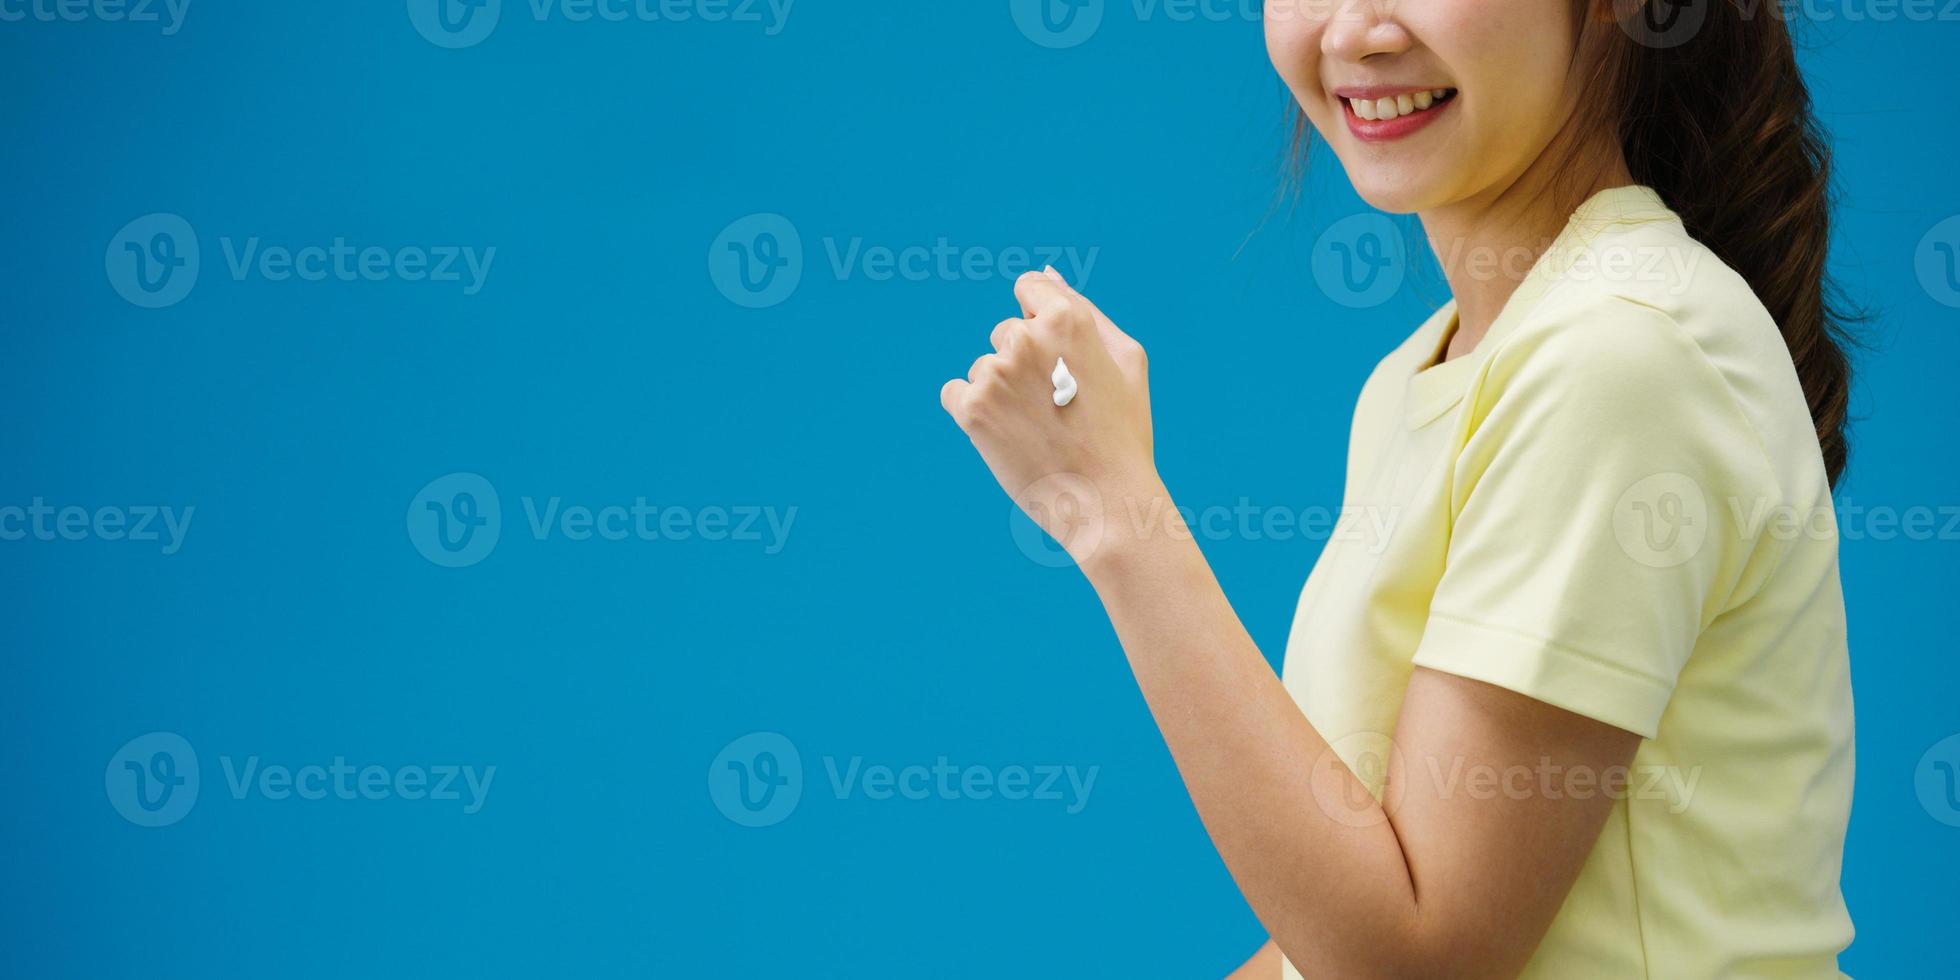 giovane ragazza asiatica che applica crema protettiva sulle mani isolate su sfondo blu. copia spazio per inserire un testo, un messaggio per la pubblicità. area pubblicitaria, mockup di contenuti promozionali. foto